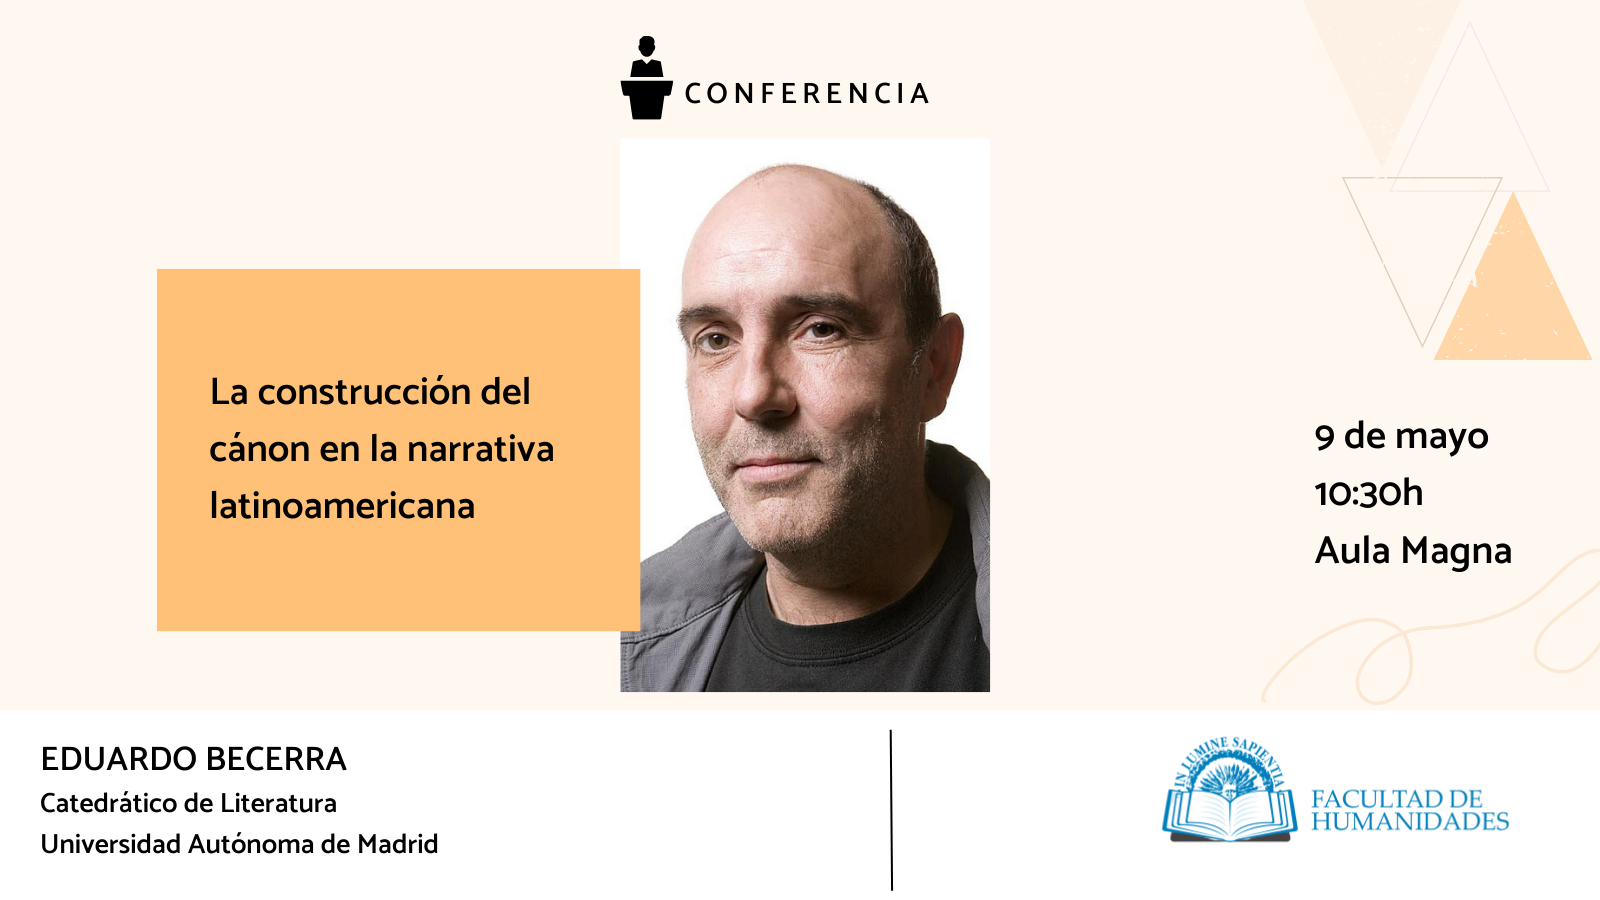 La Facultad de Humanidades y Javier Fornieles Alcaraz organizan la conferencia «La construcción del cánon en la narrativa latinoamericana».